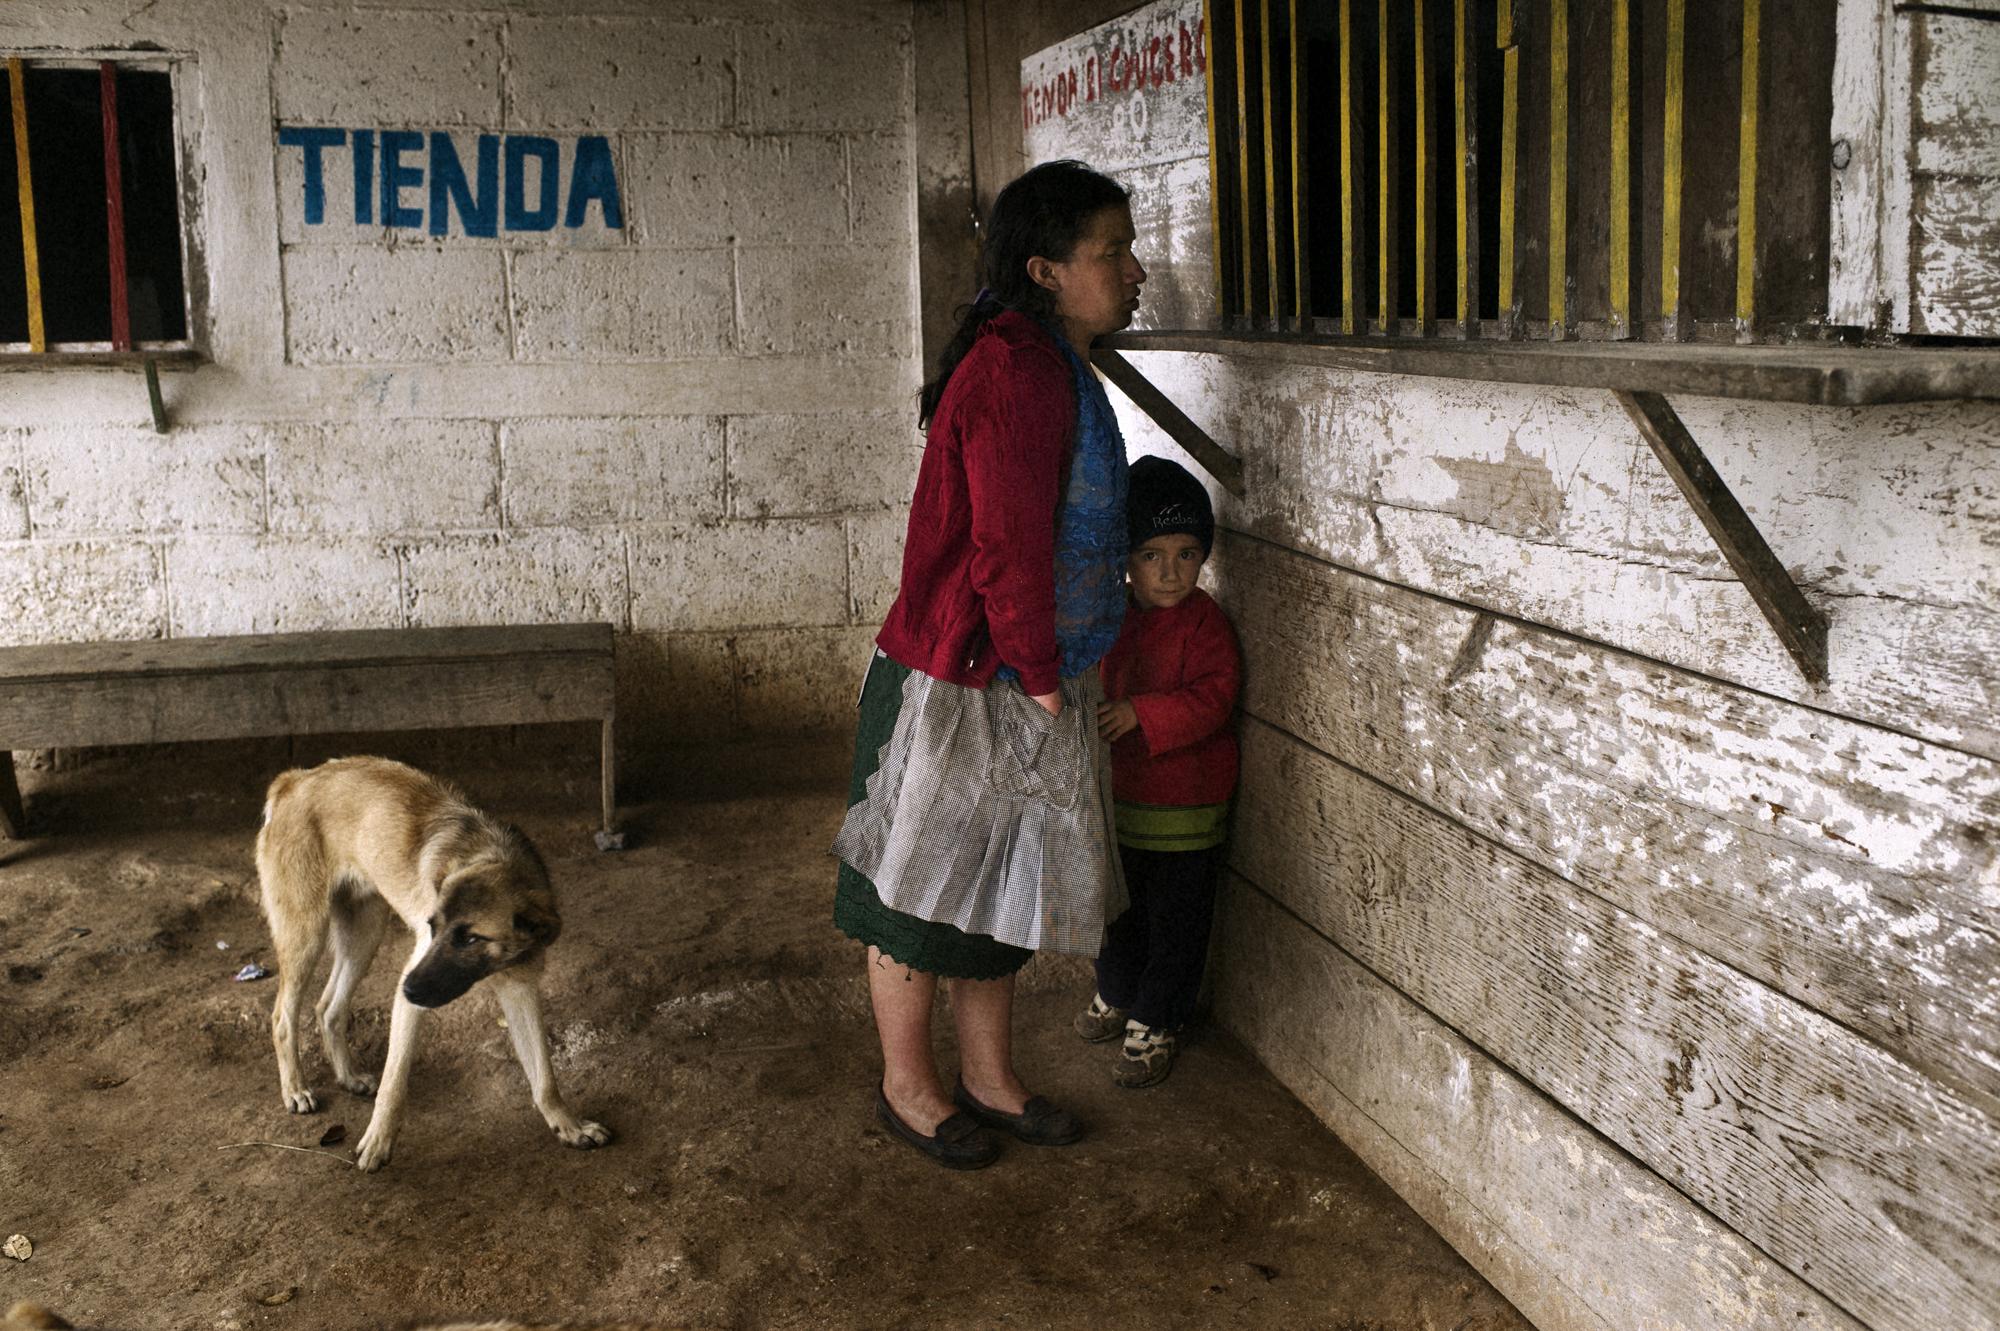 Microcredit / Guatemala - Quetzaltenango, Palestina, Guatemala. September 2011...